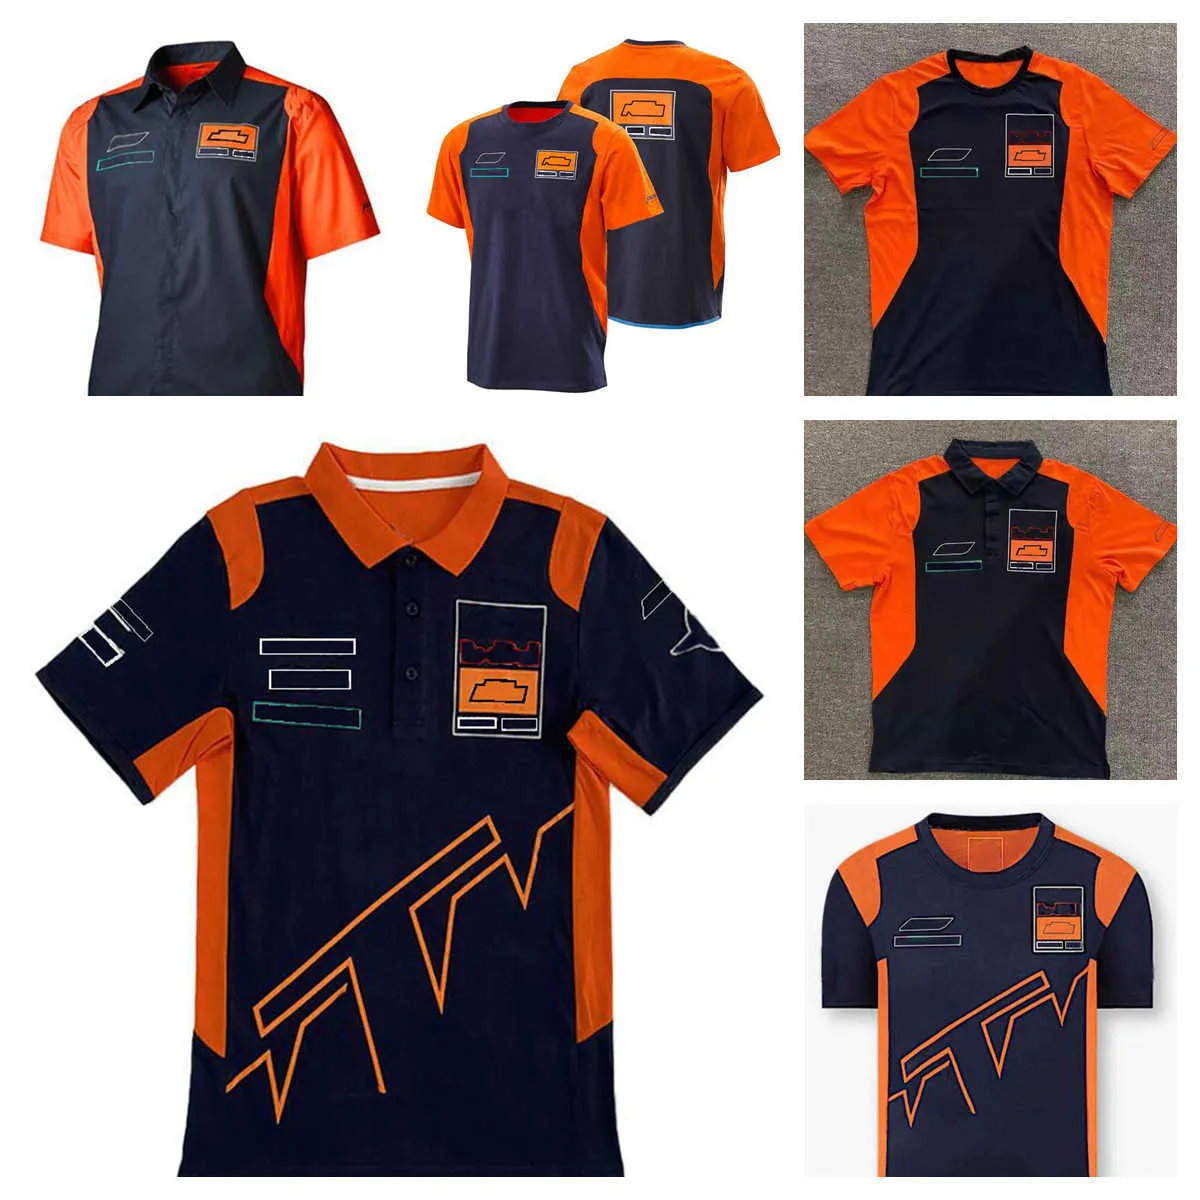 2021-F1 tuta da corsa a maniche corte serie Ricciardo squadra uniforme poliestere ad asciugatura rapida T-shirt girocollo può essere personalizzata